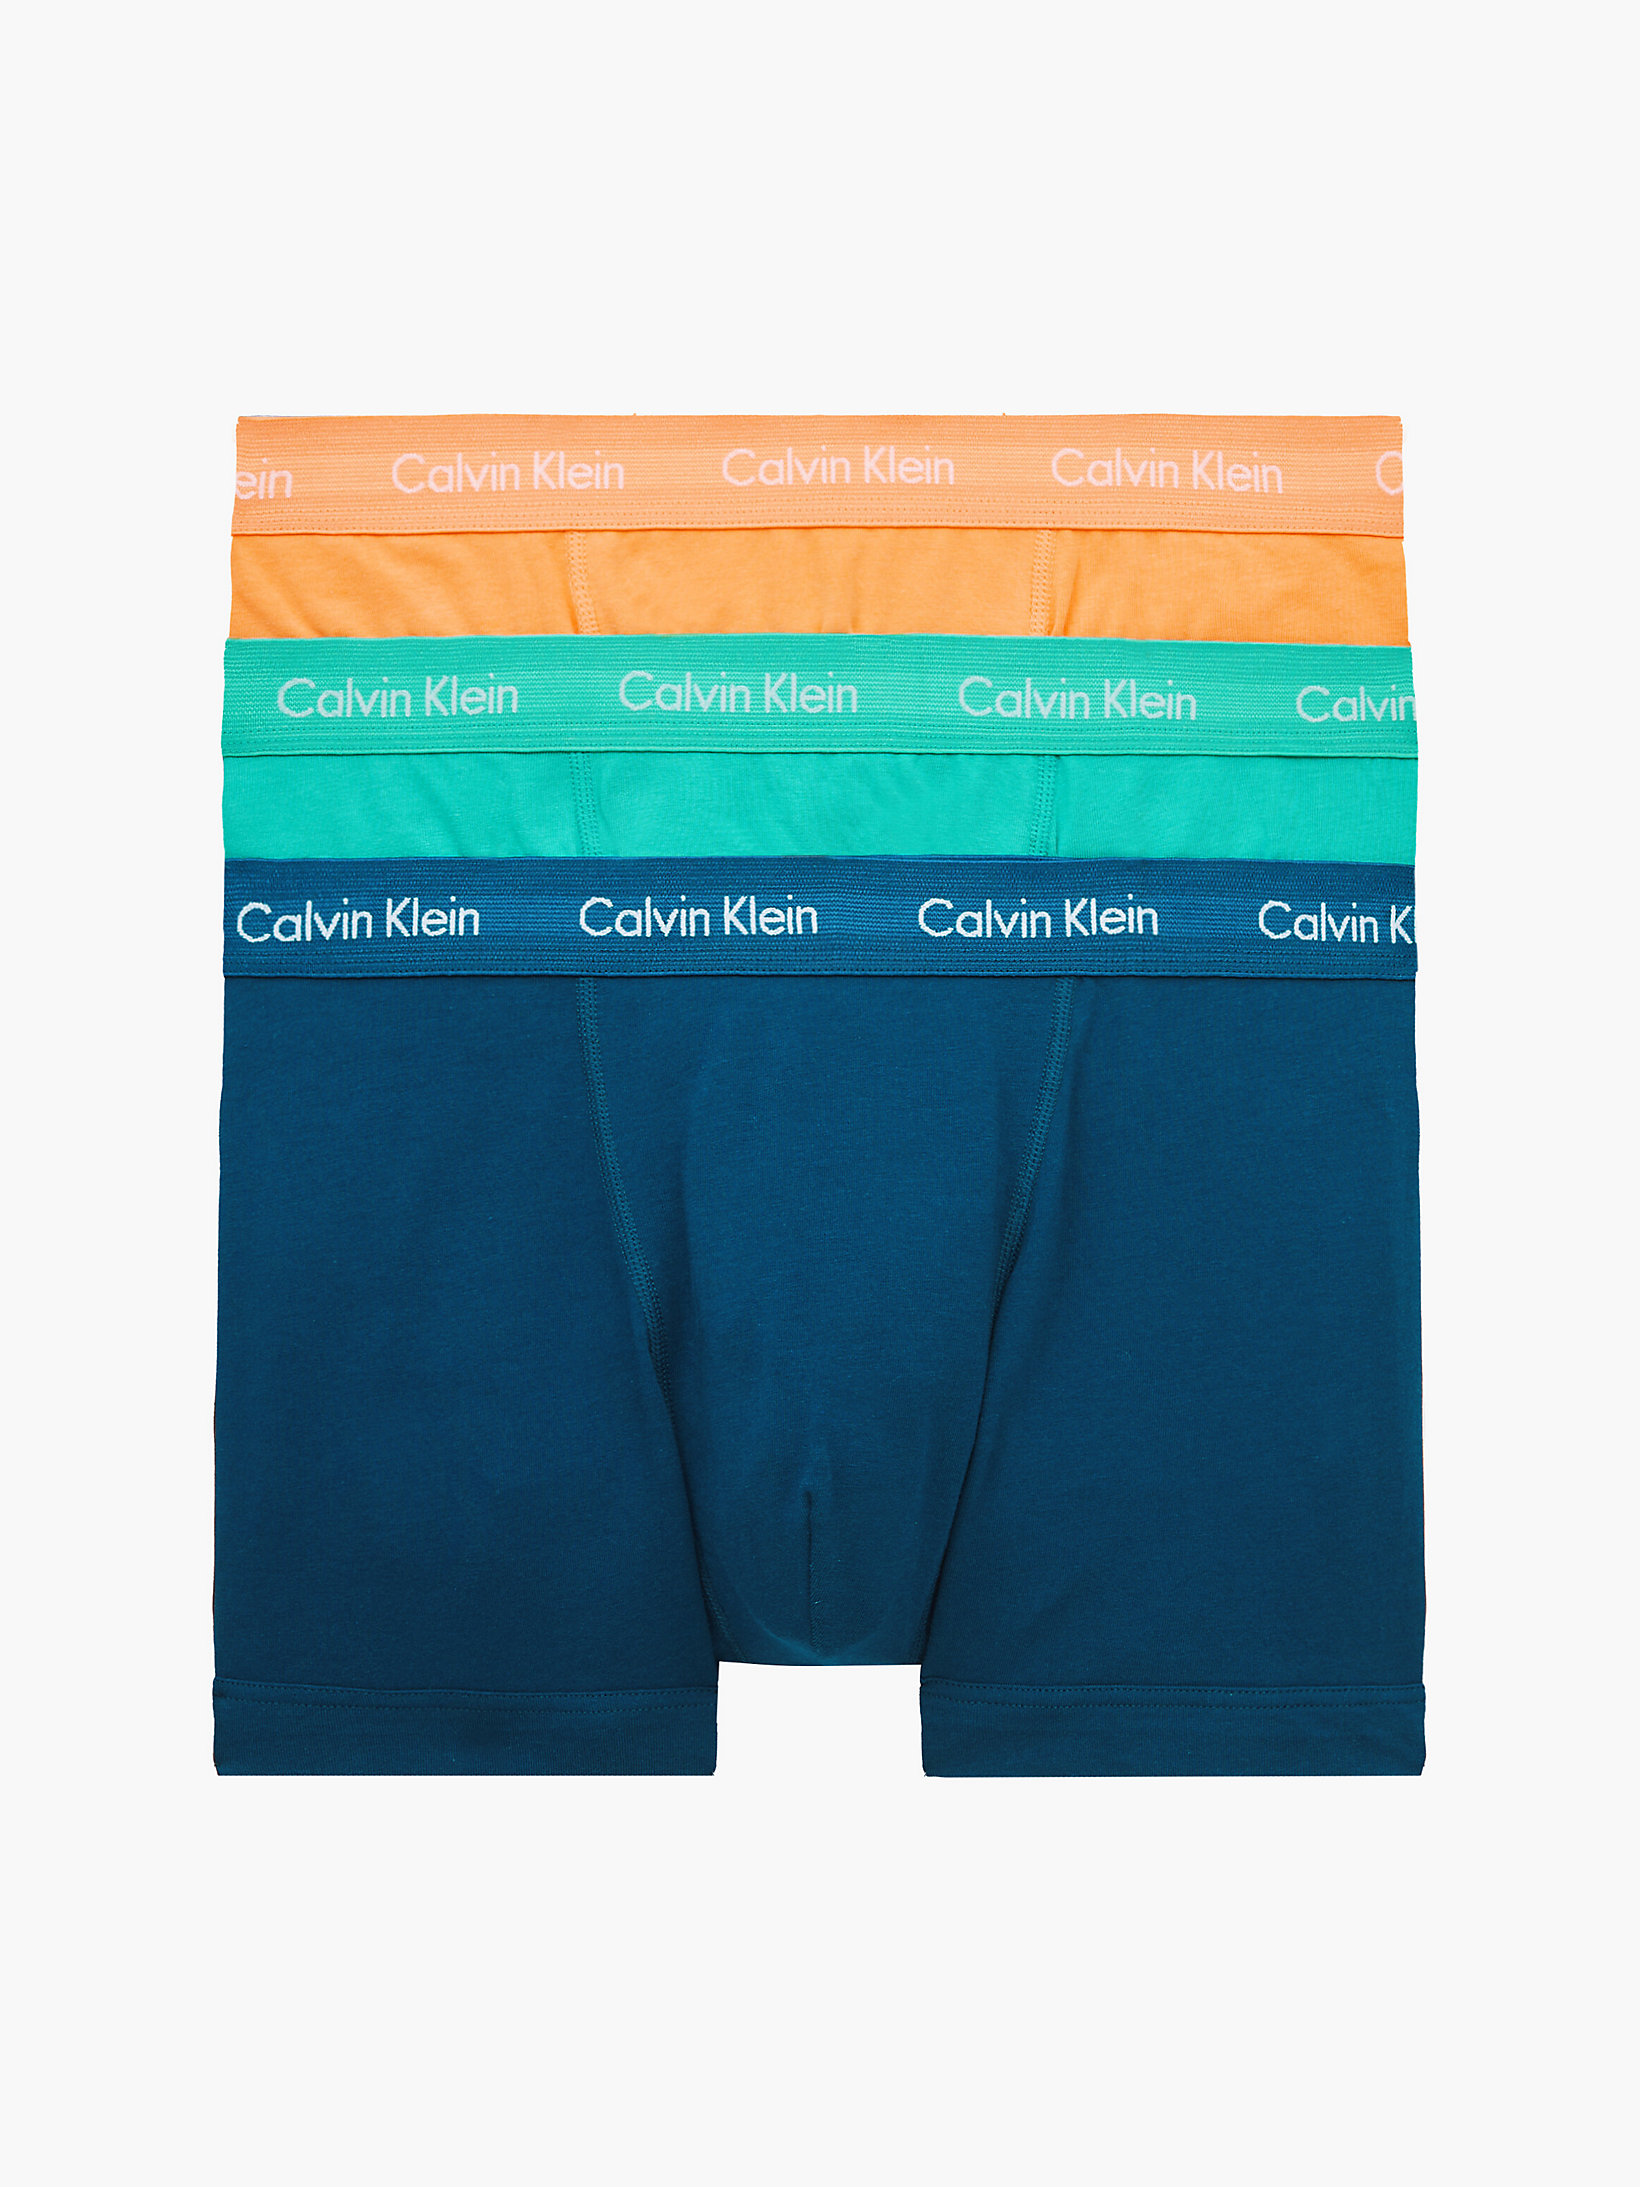 Cotton Stretch Lot de 3 slips Calvin Klein Homme Vêtements Sous-vêtements Culottes & Bas Culottes 